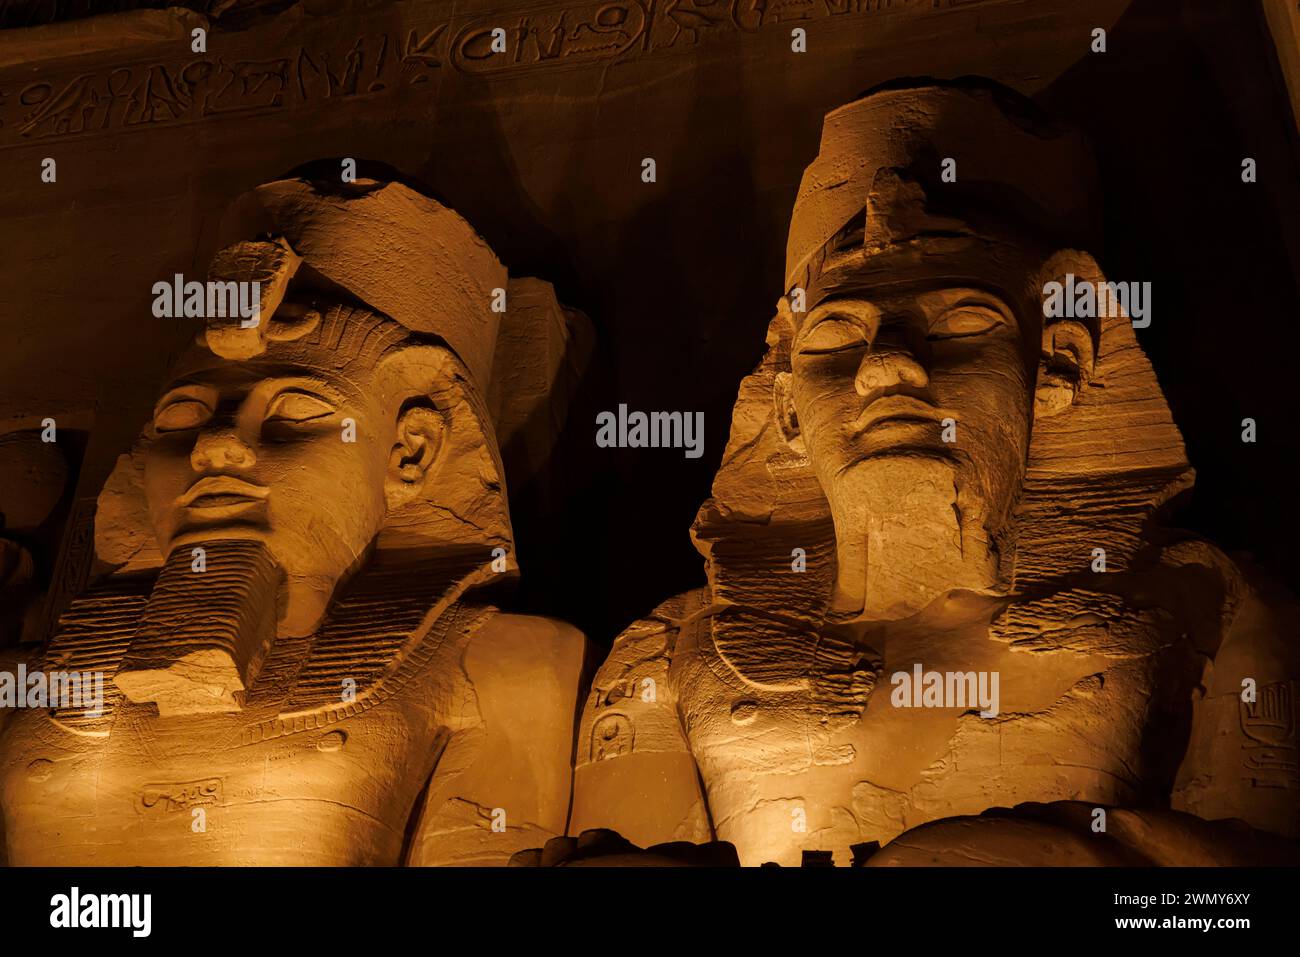 Egitto, Abu Simbel, monumenti nubiani da Abu Simbel a file, patrimonio mondiale dell'UNESCO, spettacolo di luci e suoni di Abu Simbel, tempio Ramses II Foto Stock